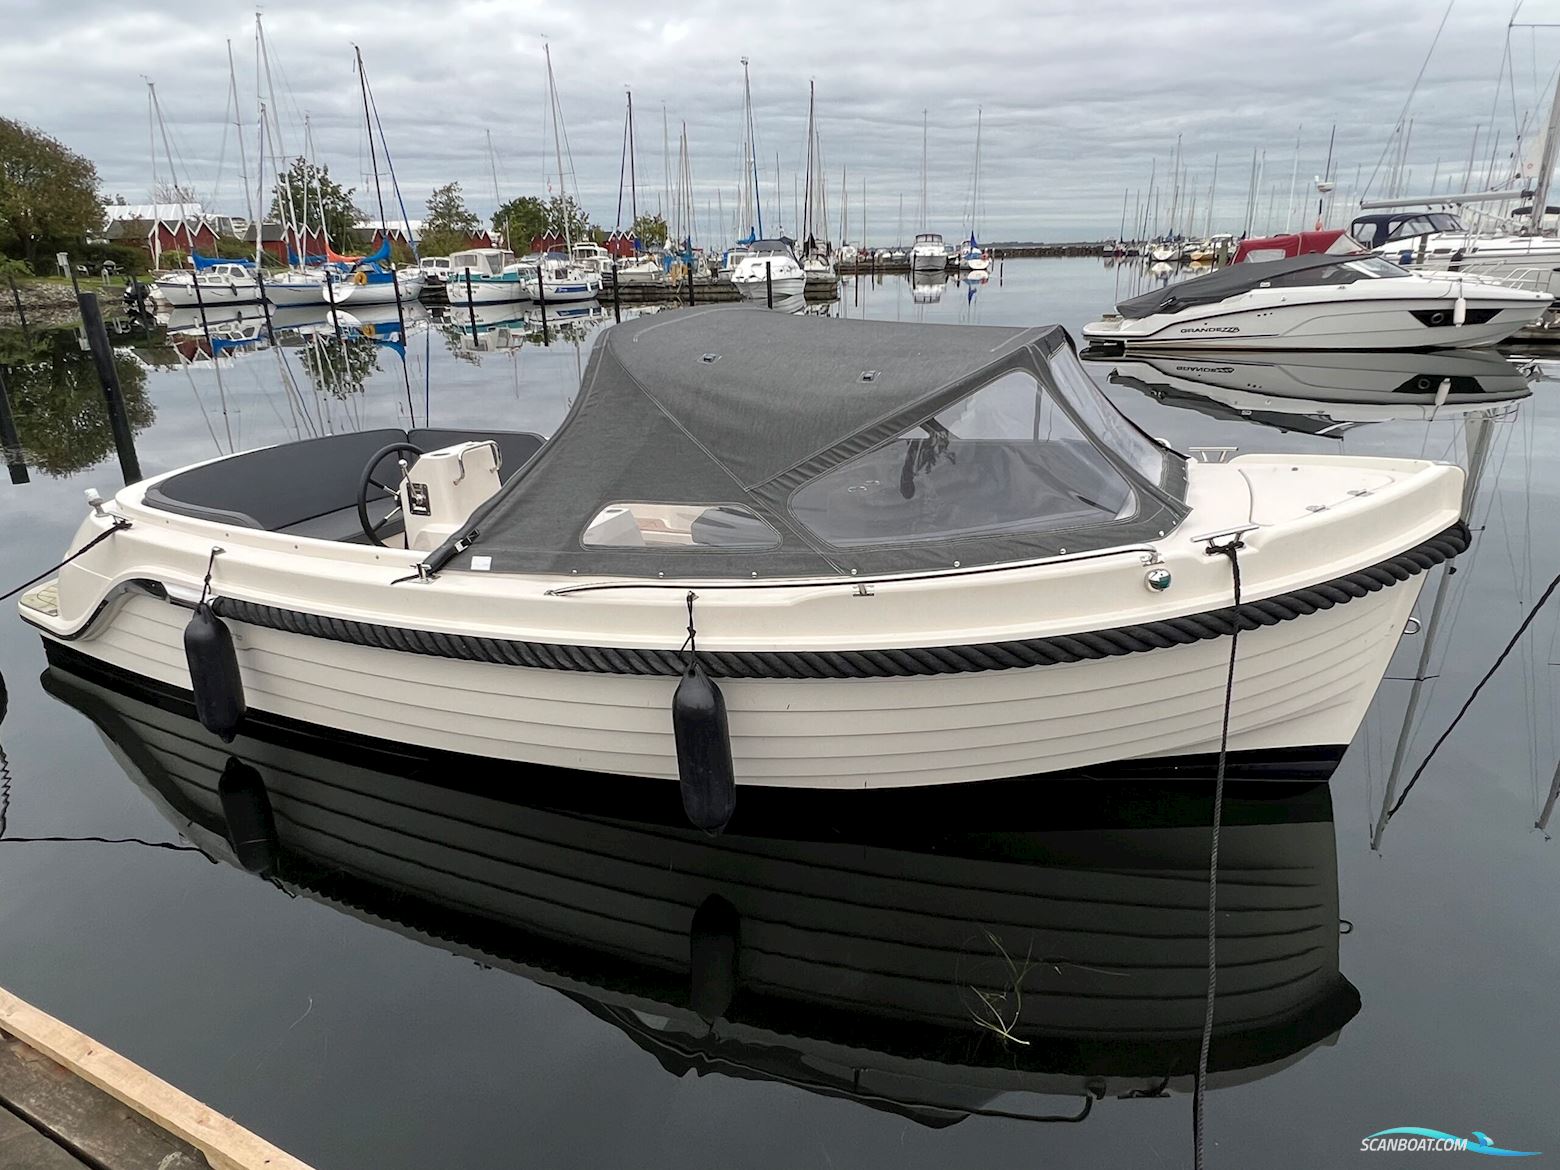 Interboat Intender 640 Motorbåt 2017, med Vetus motor, Danmark